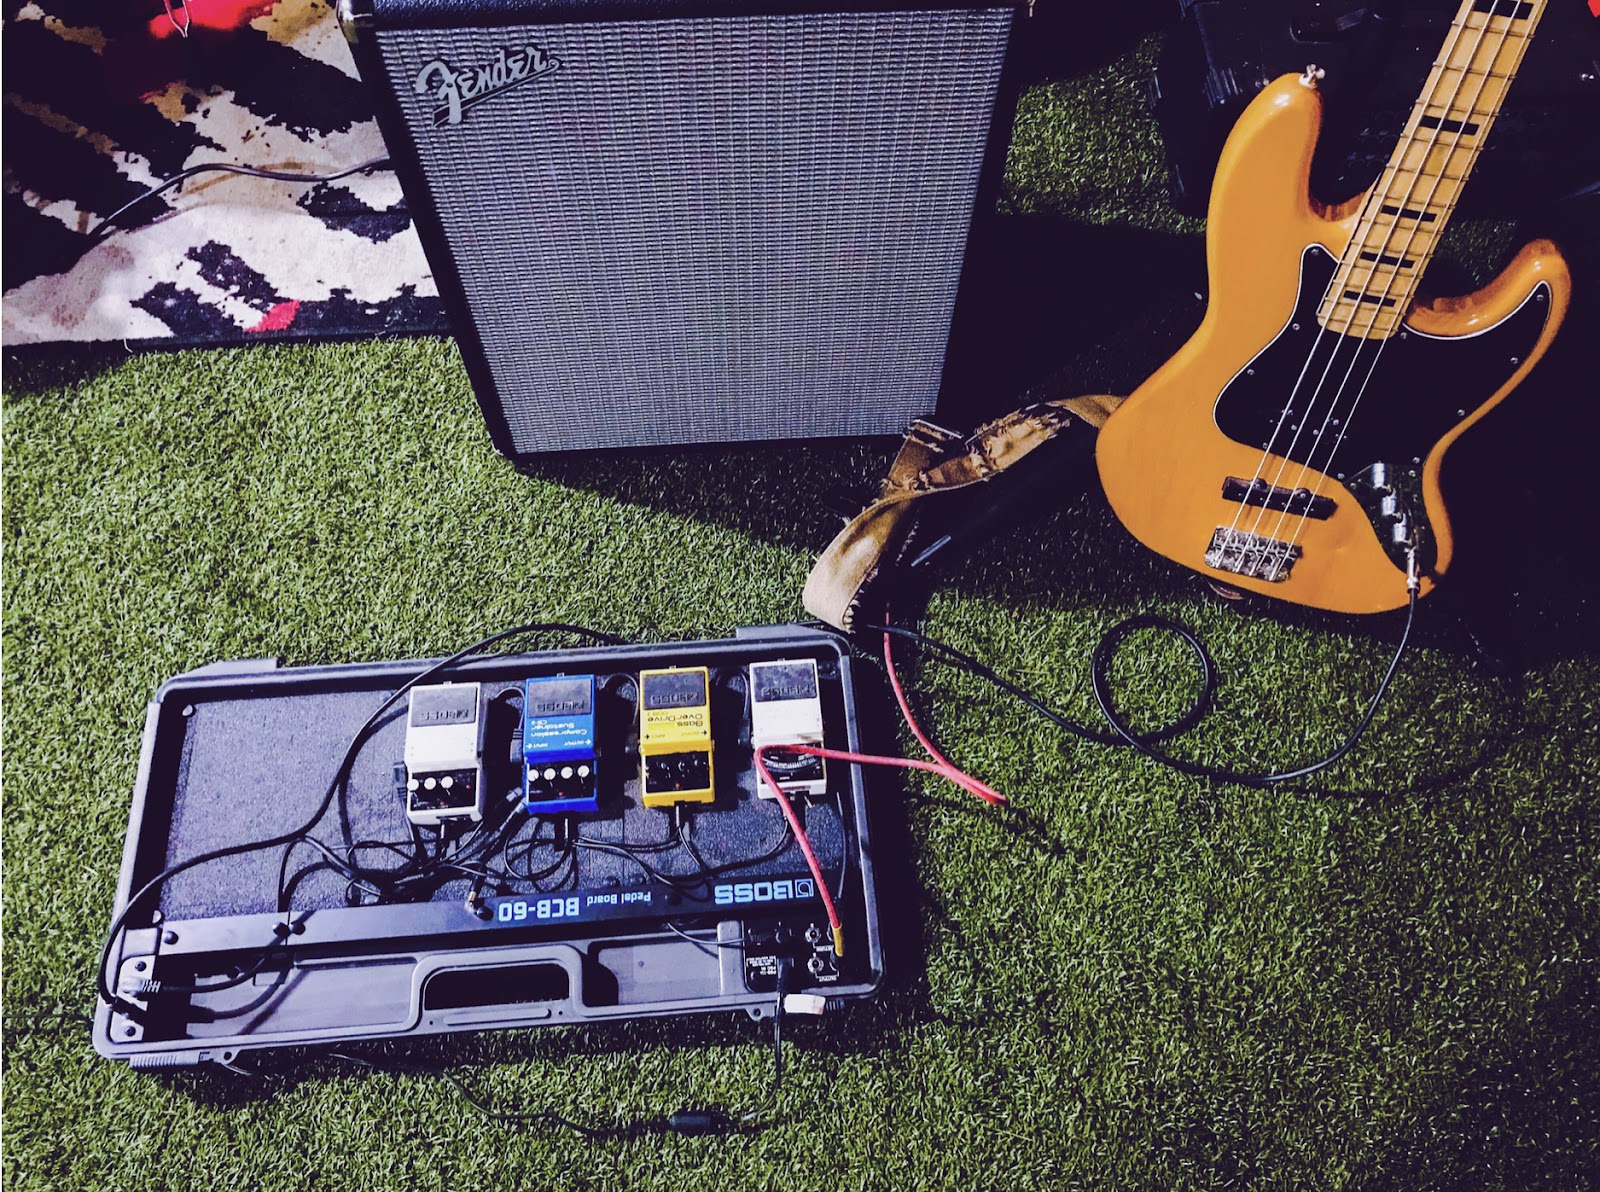 Bass guitar and amplifier.